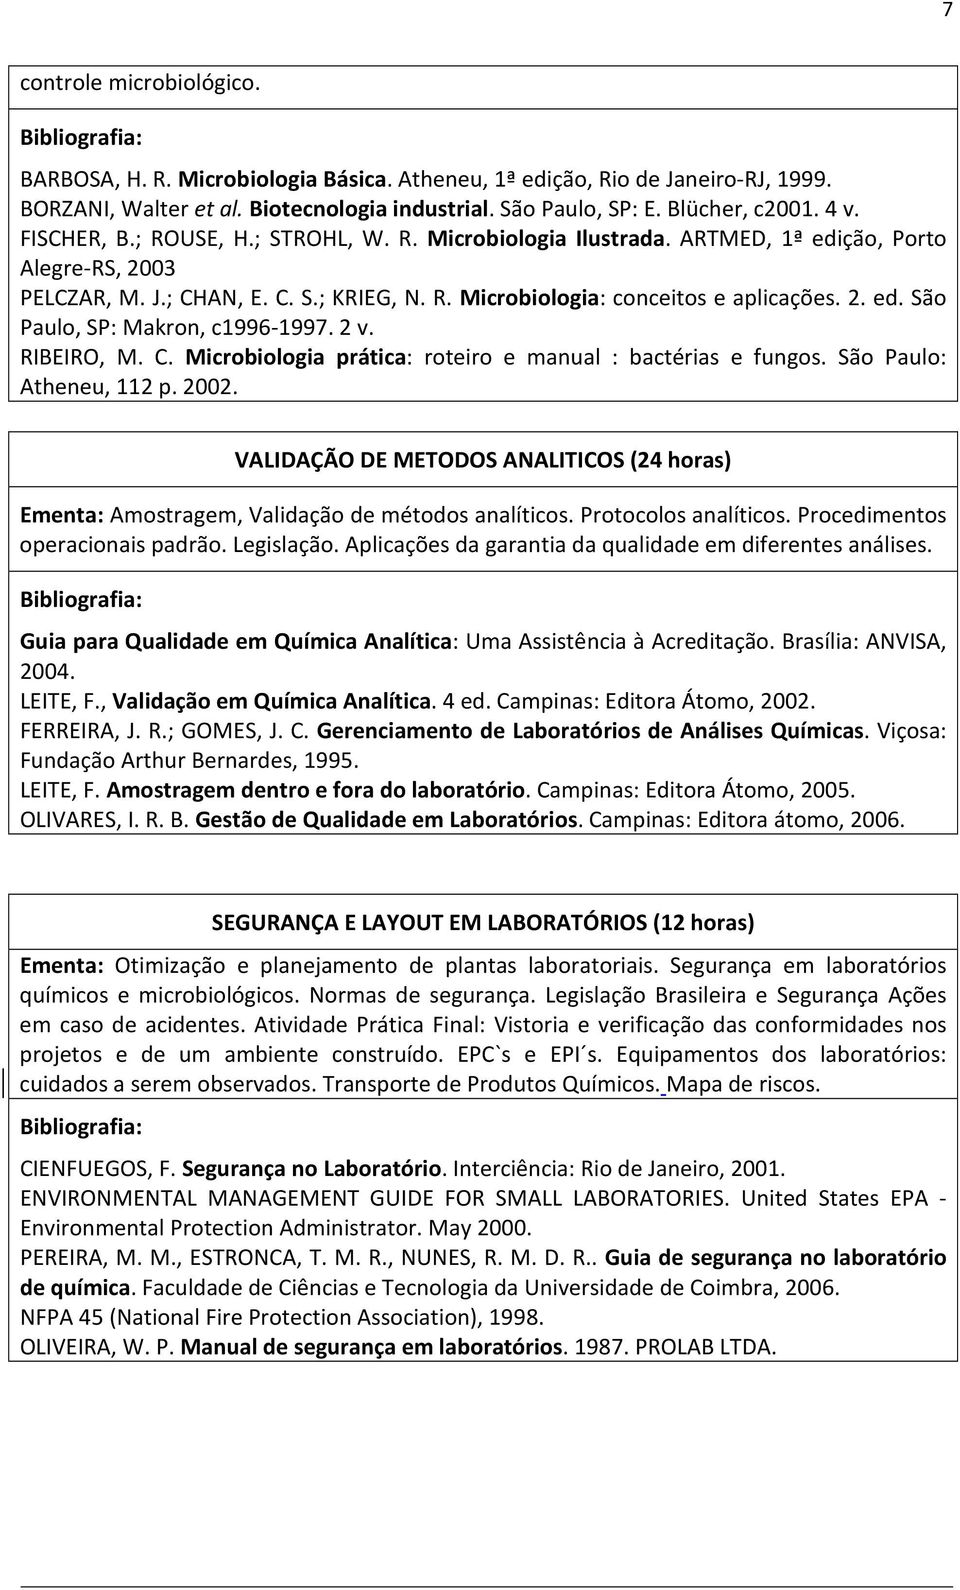 2 v. RIBEIRO, M. C. Microbiologia prática: roteiro e manual : bactérias e fungos. São Paulo: Atheneu, 112 p. 2002.